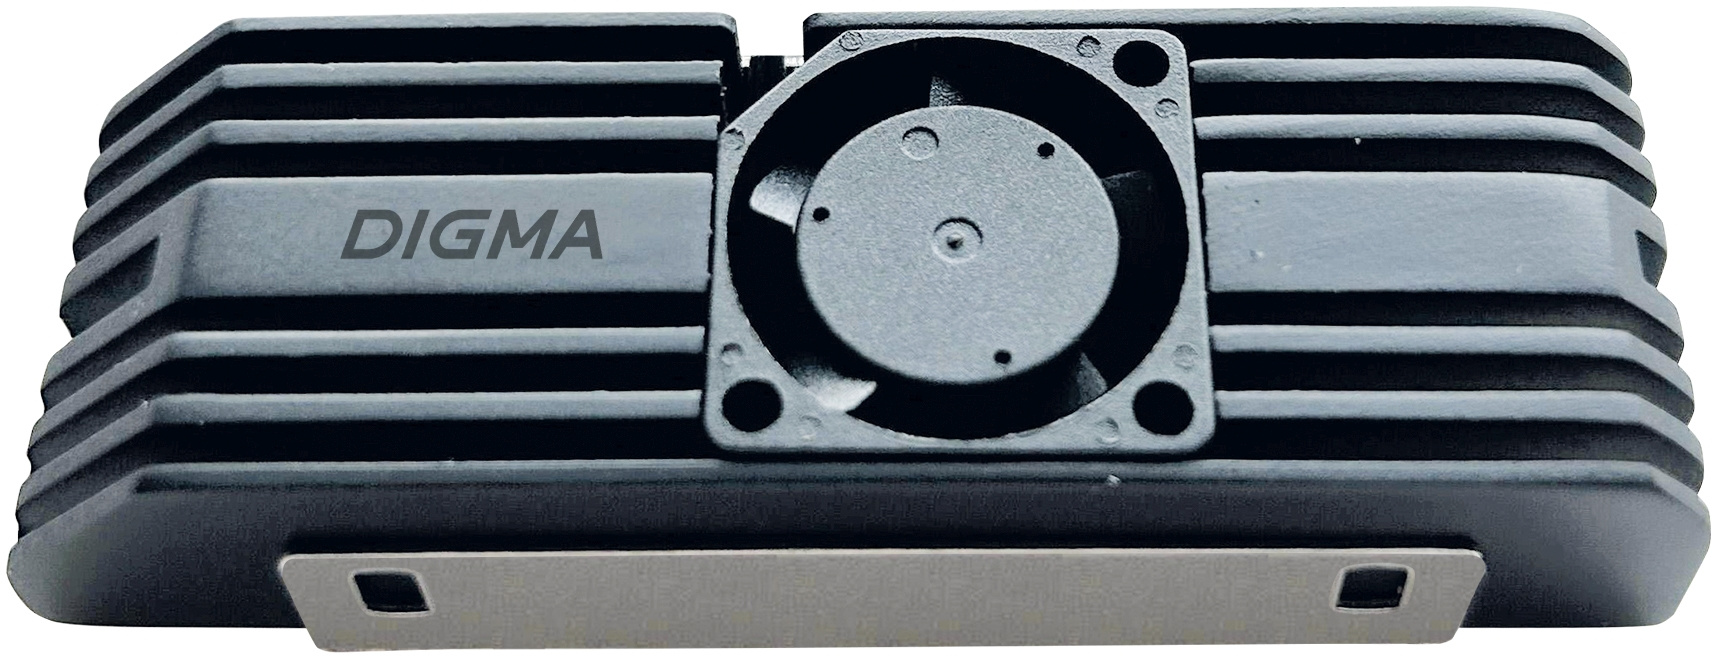 Радиатор для SSD M.2 2280 Digma DGRDRM2C, алюминий, черный (DGRDRM2C) - фото 1